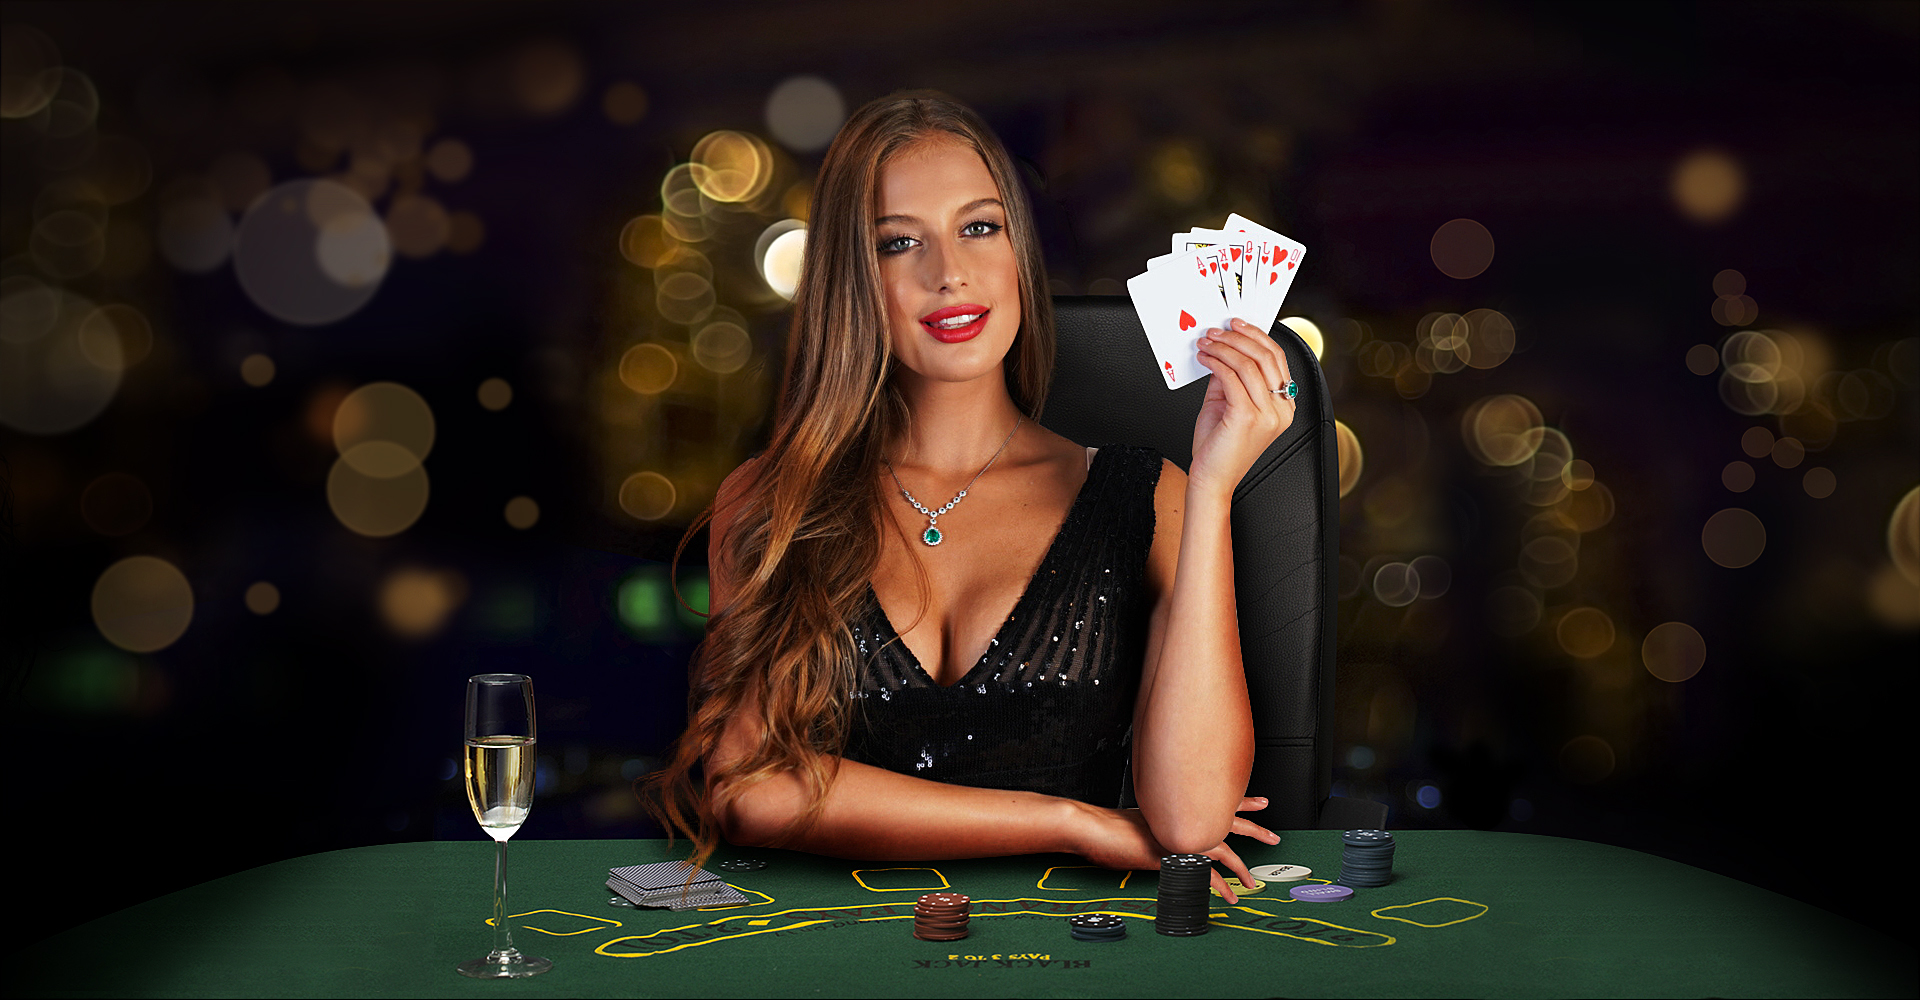 Обзор онлайн казино Монро: играйте с удовольствием и выигрывайте большие деньги!